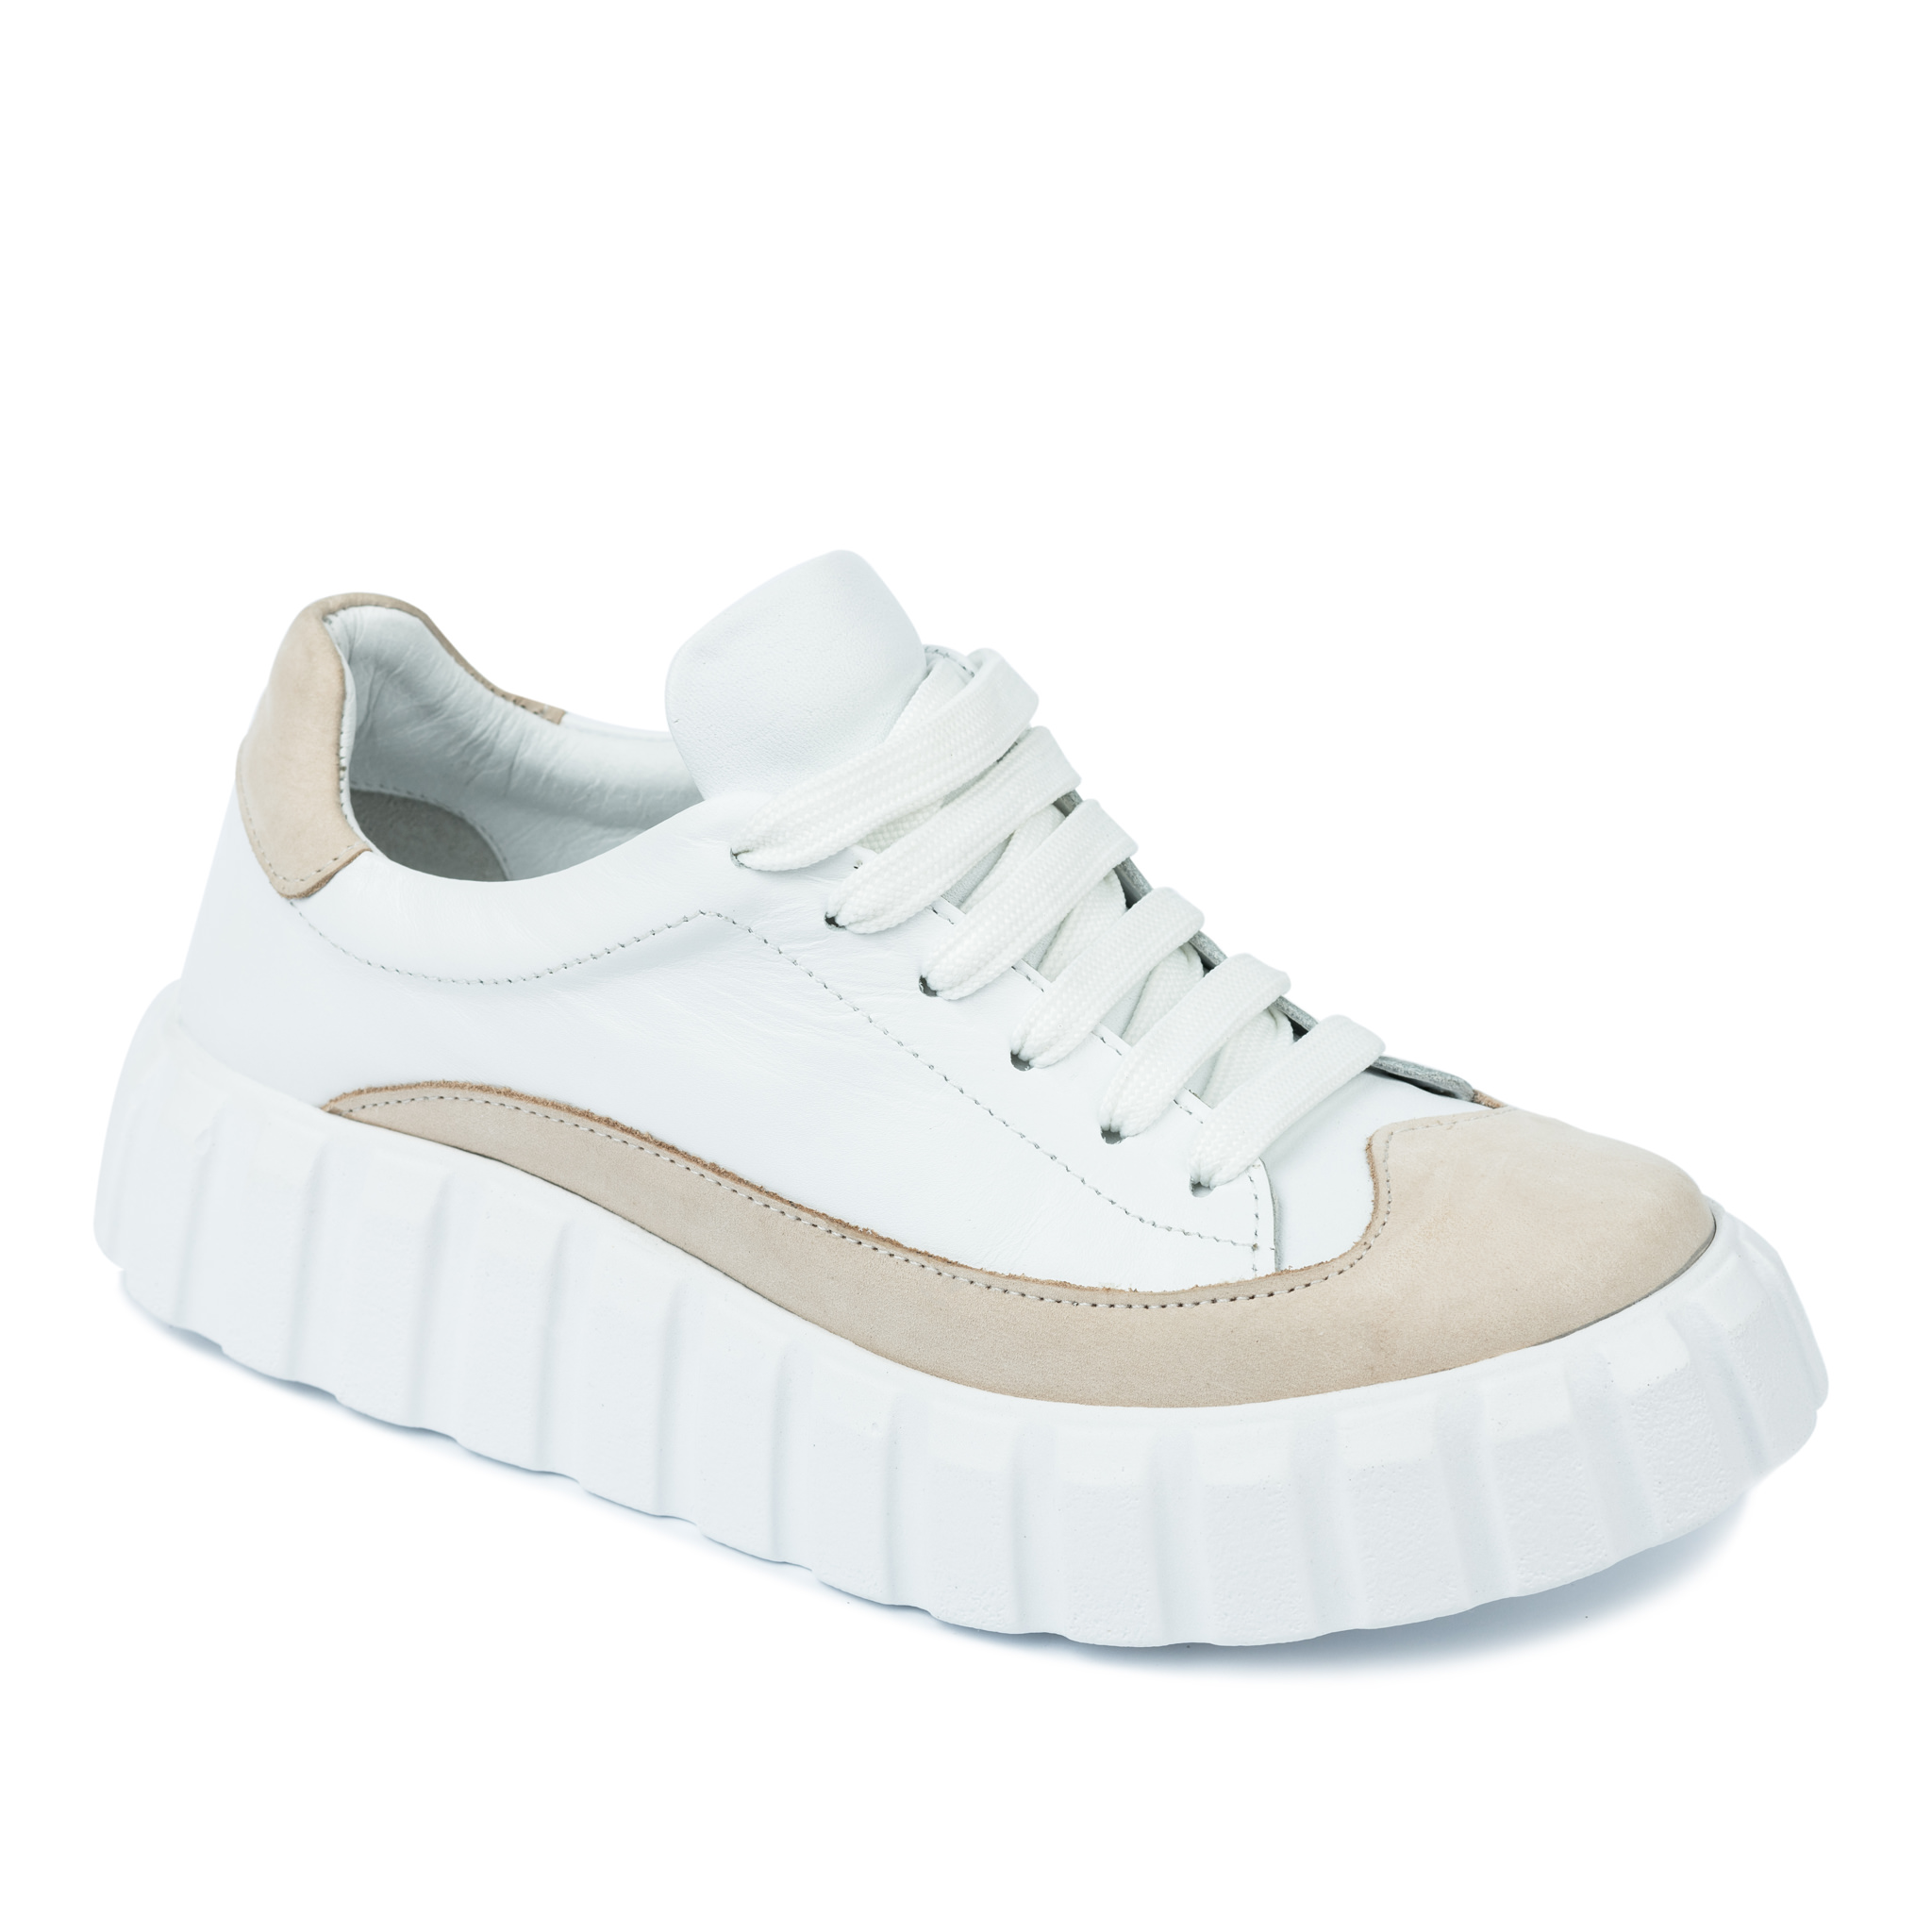 Women sneakers A323 - WHITE